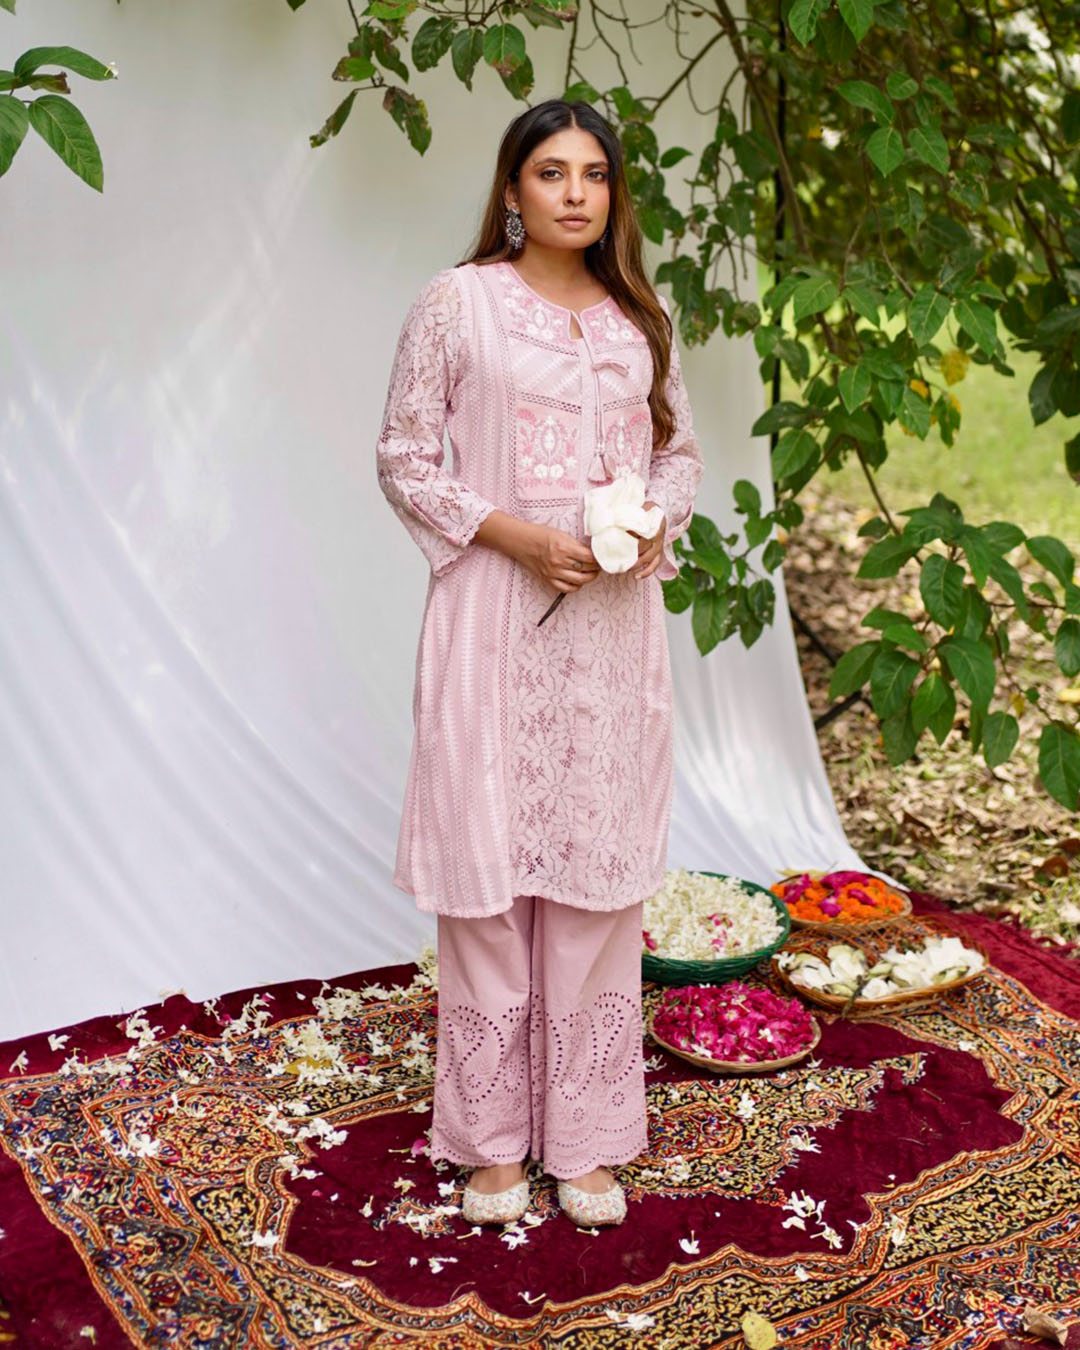 Latest Design Anarkali Suit: पार्टी में जमाना है रंग तो पहनें अनारकली सूट